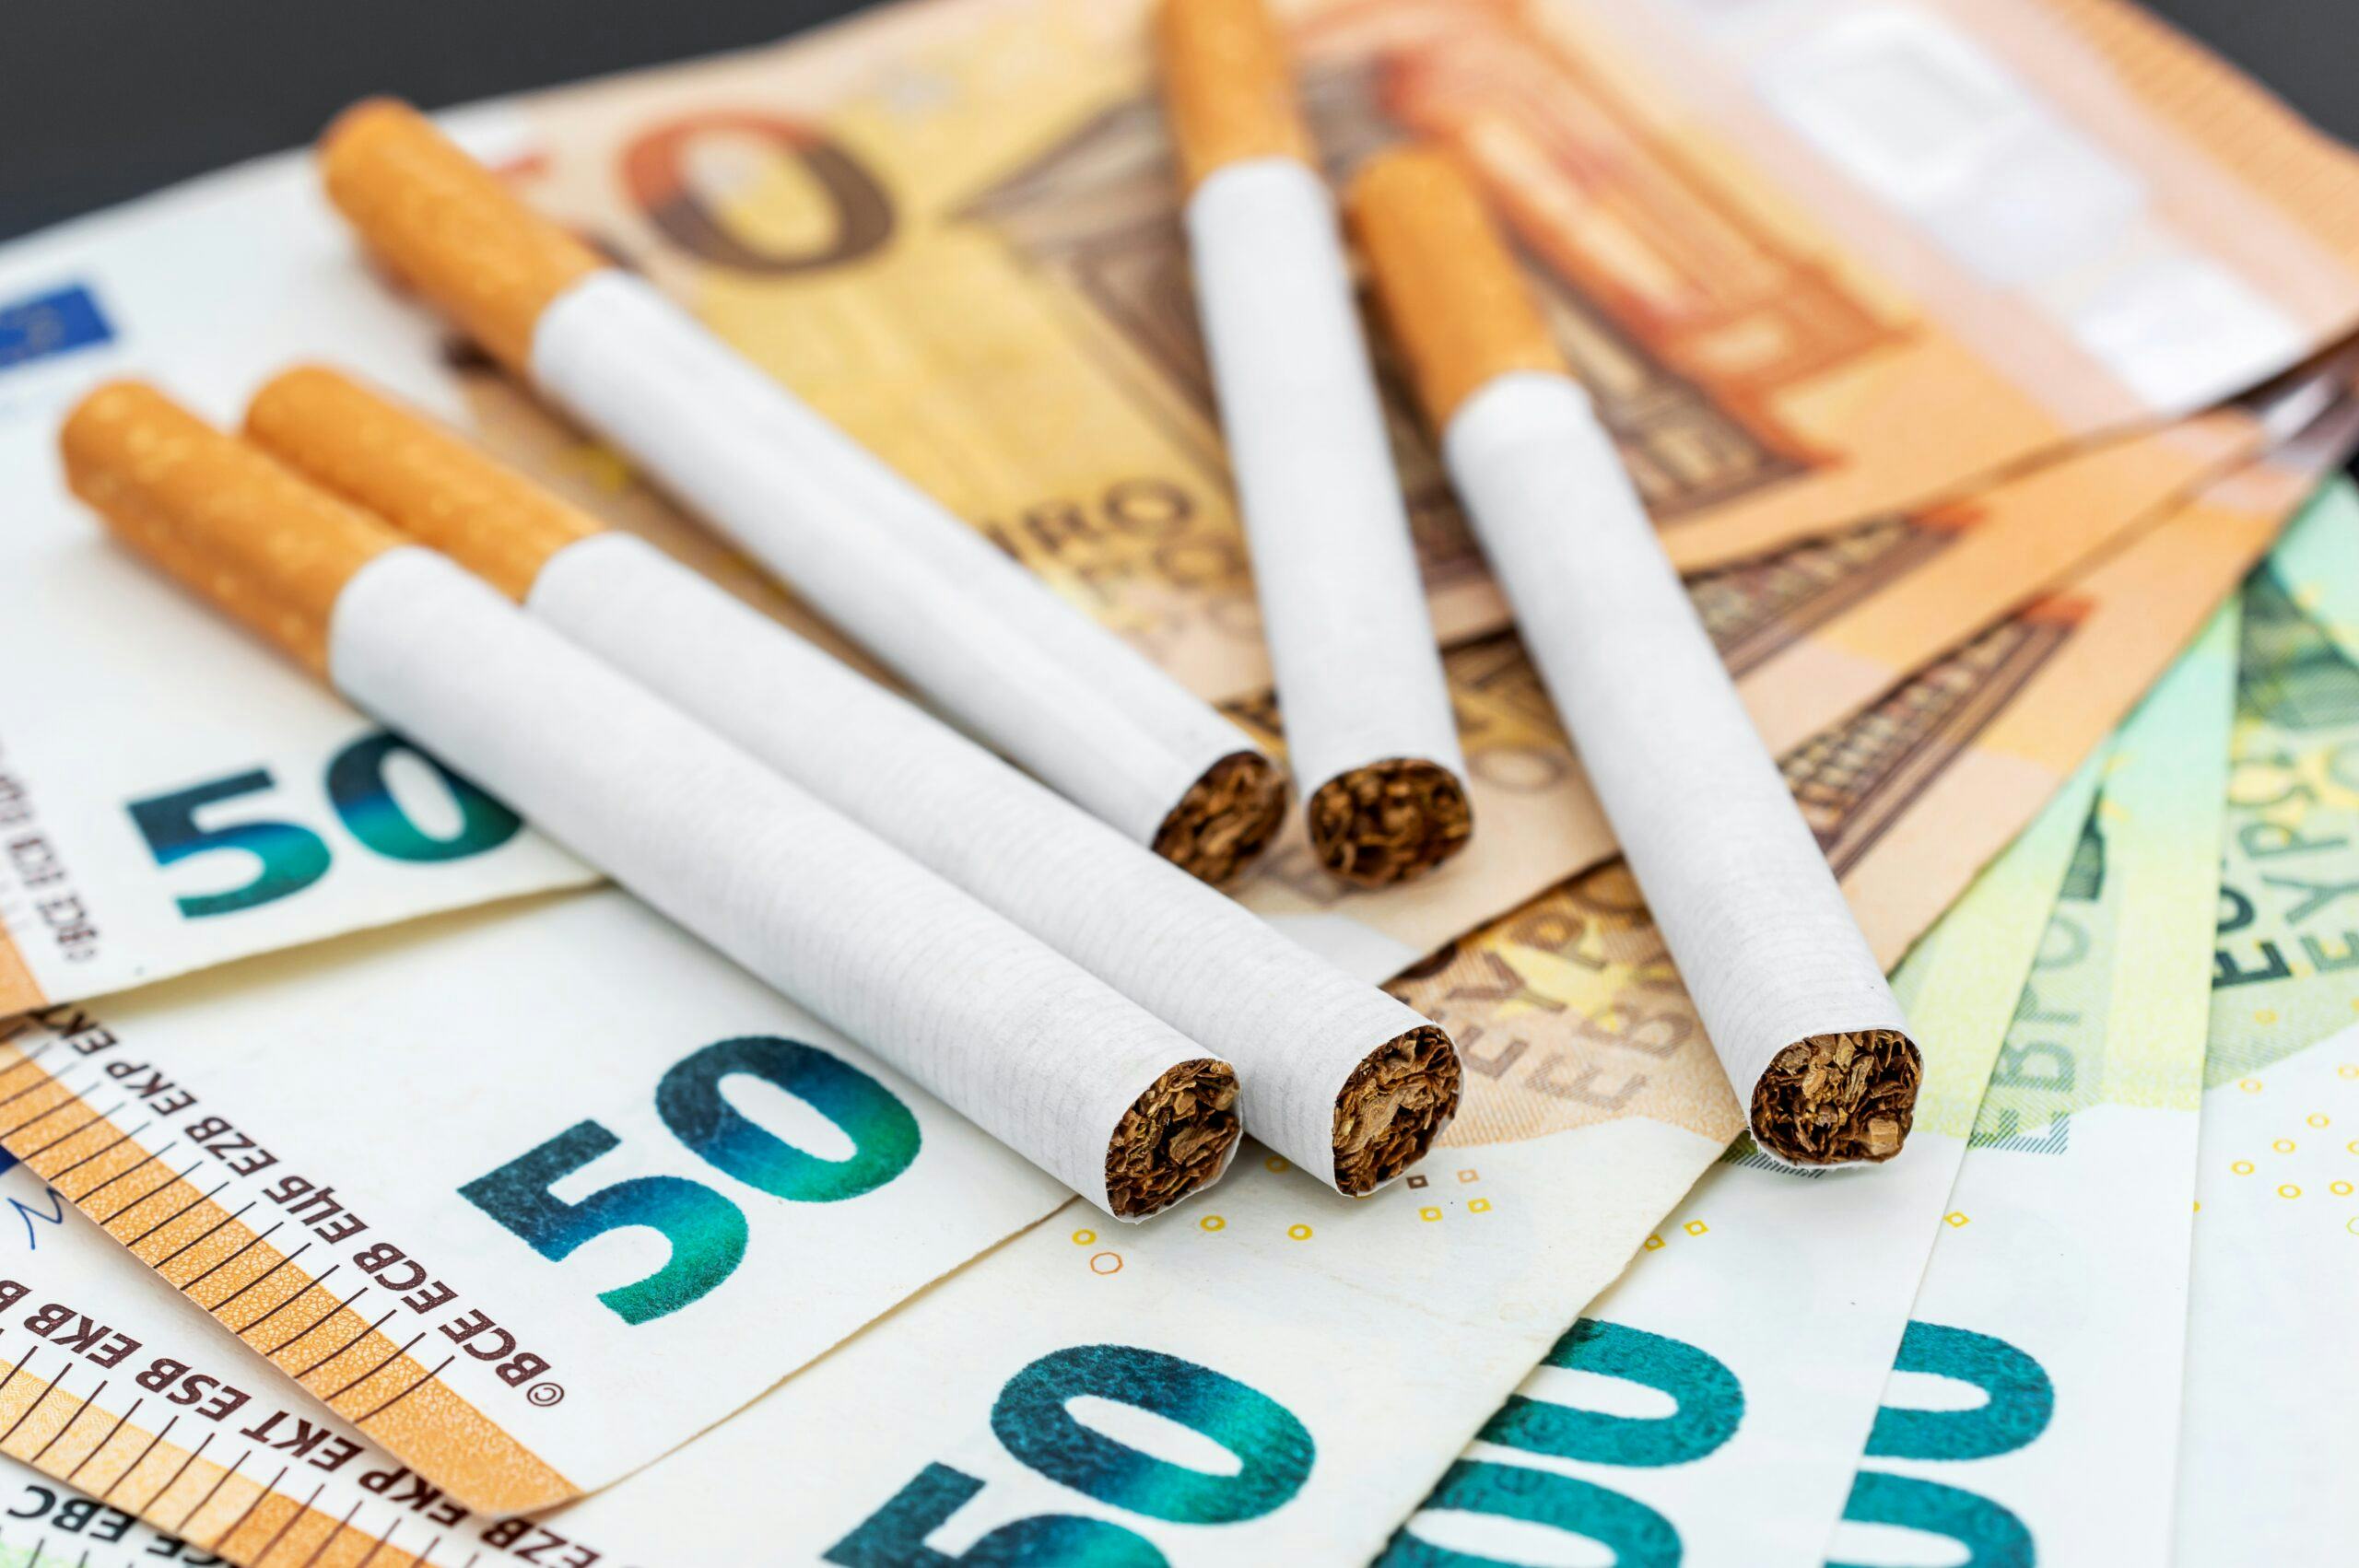 Experts vrezen voor overlast en illegale handel door de naderende tabaksban in supermarkten. Foto: Shutterstock